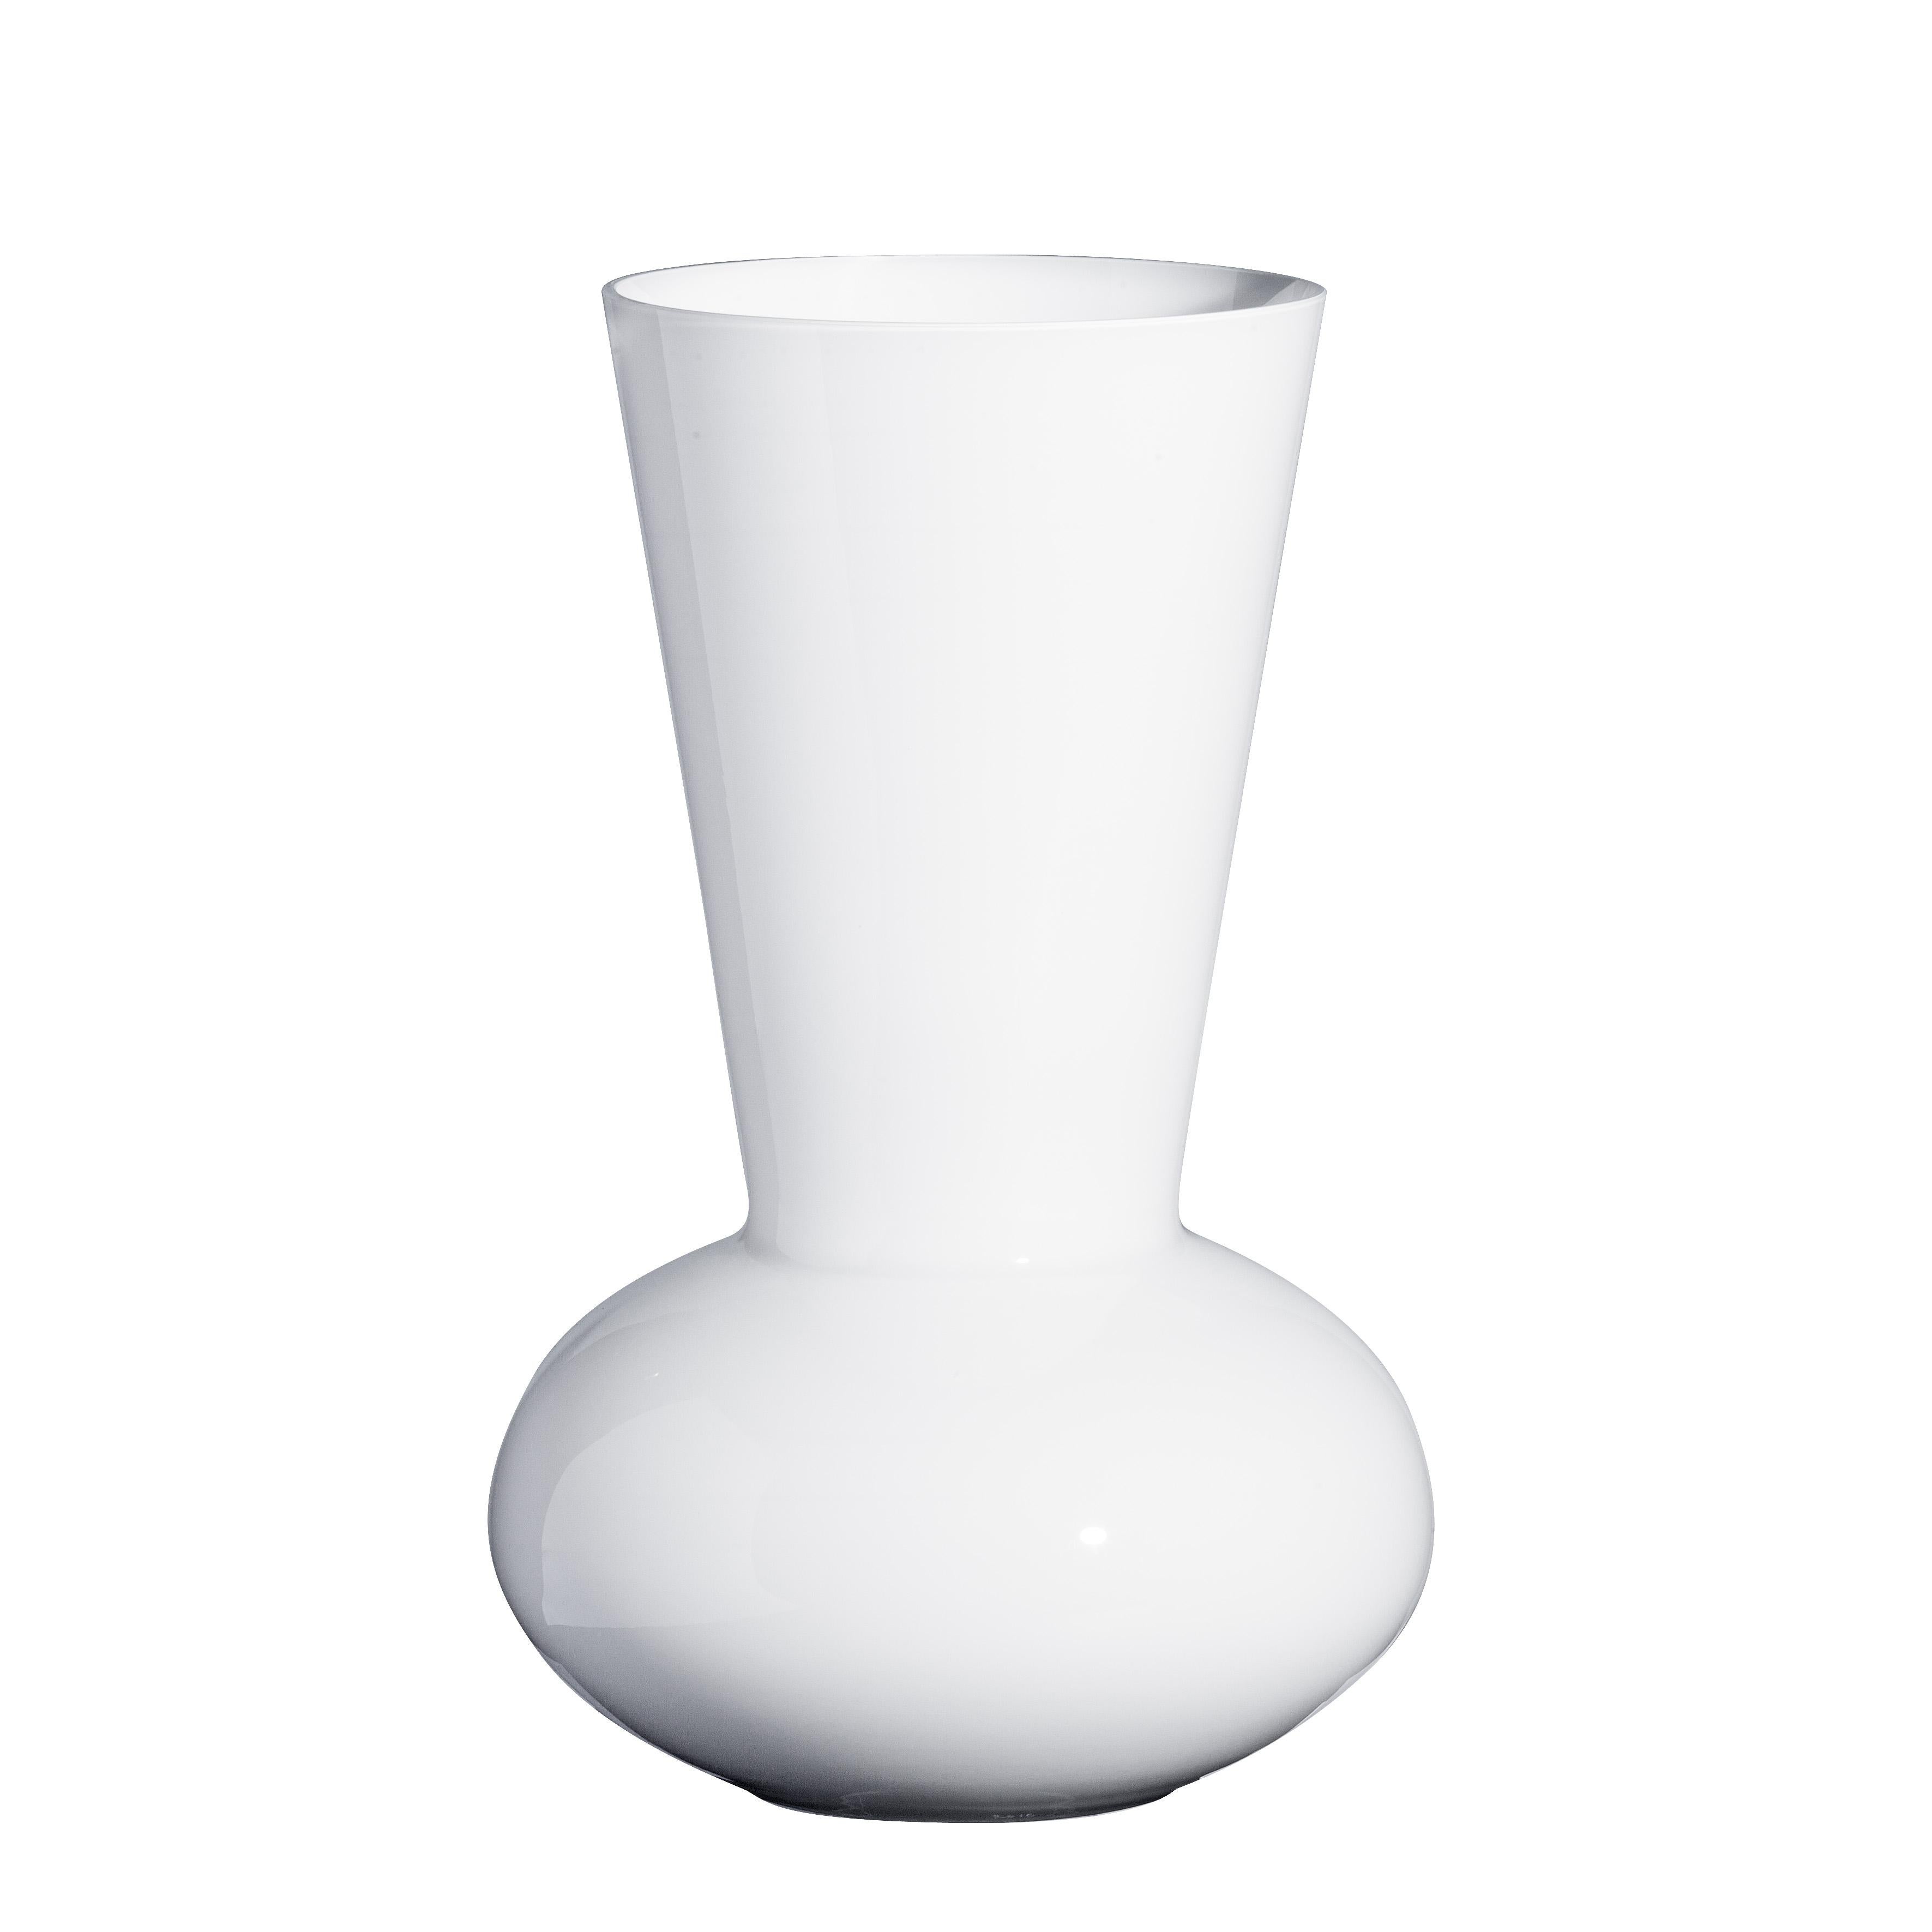 Medium Troncosfera Vase in White by Carlo Moretti